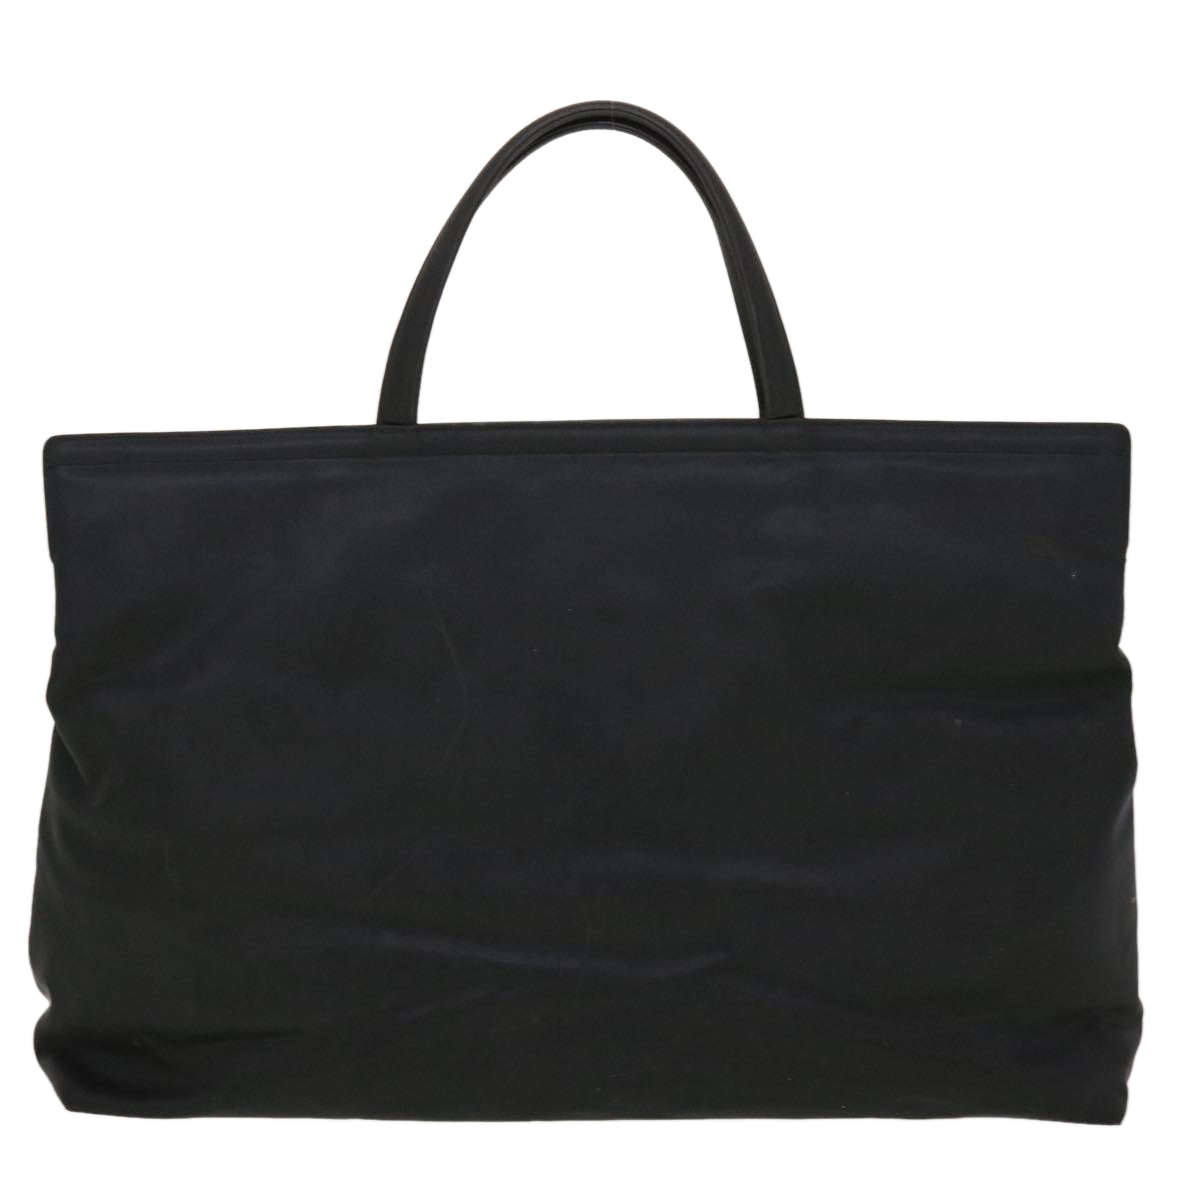 Salvatore Ferragamo Hand Bag Nylon Black AU-21 8865 Auth cl524 - 0